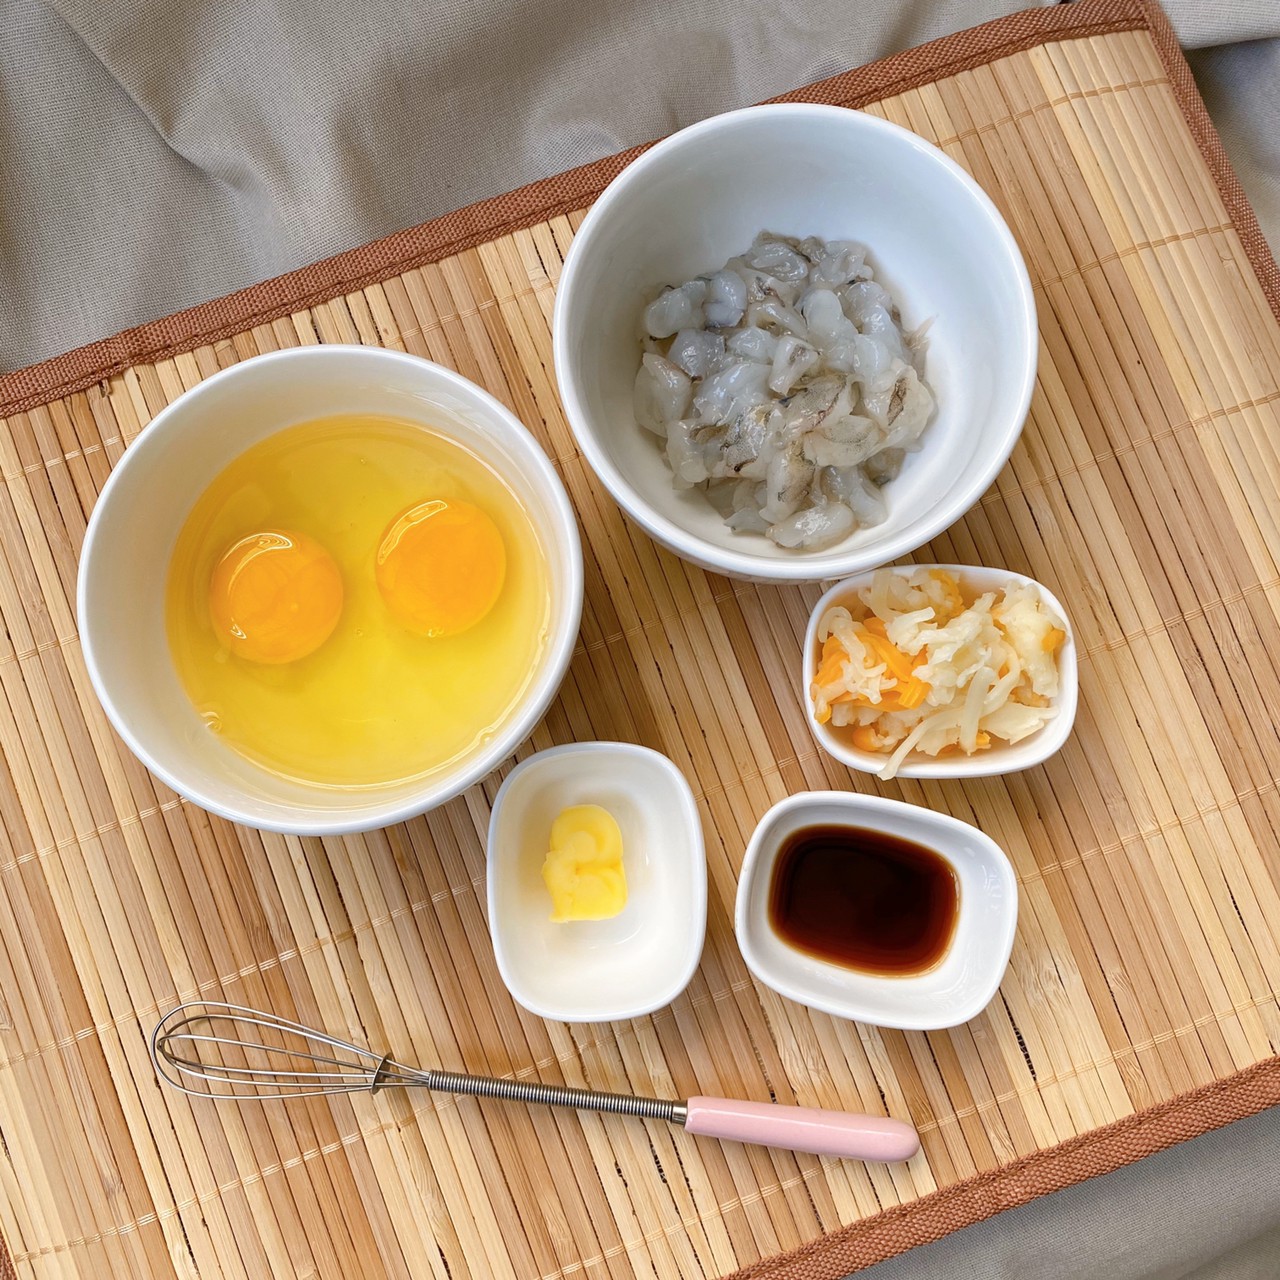 ไข่เจียวกุ้งชีส เมนูสุดง่าย สำหรับมือใหม่หัดเข้าครัว